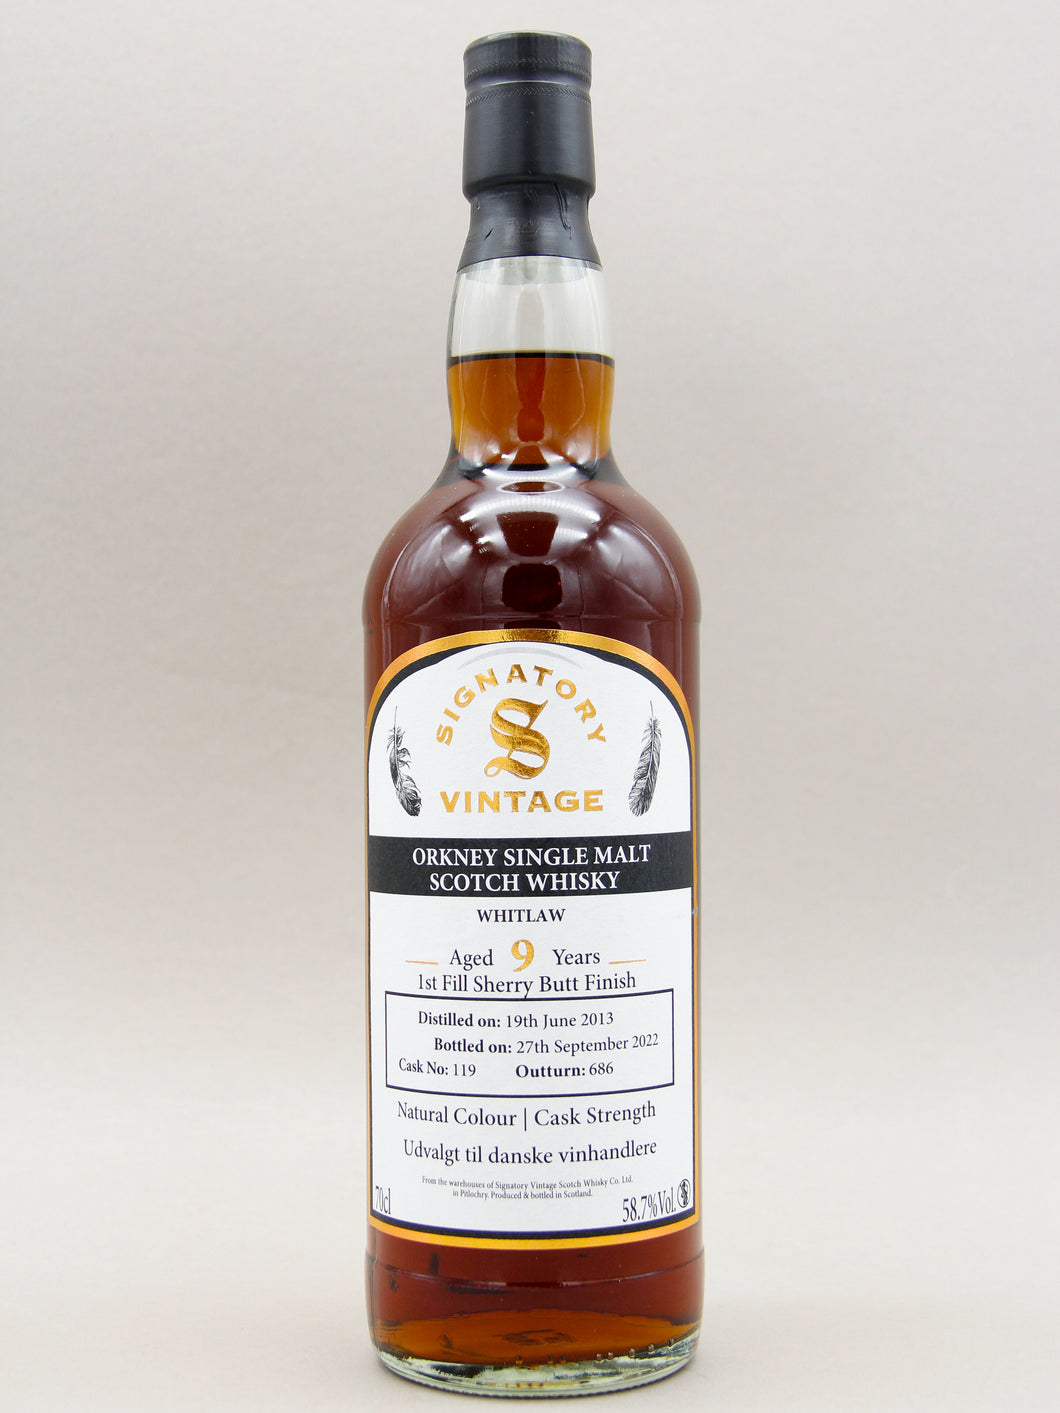 Orkney 2013-2022, Whitlaw, Signatory Vintage, Orkney Single Malt Scotch Whisky (58.7%, 70cl)